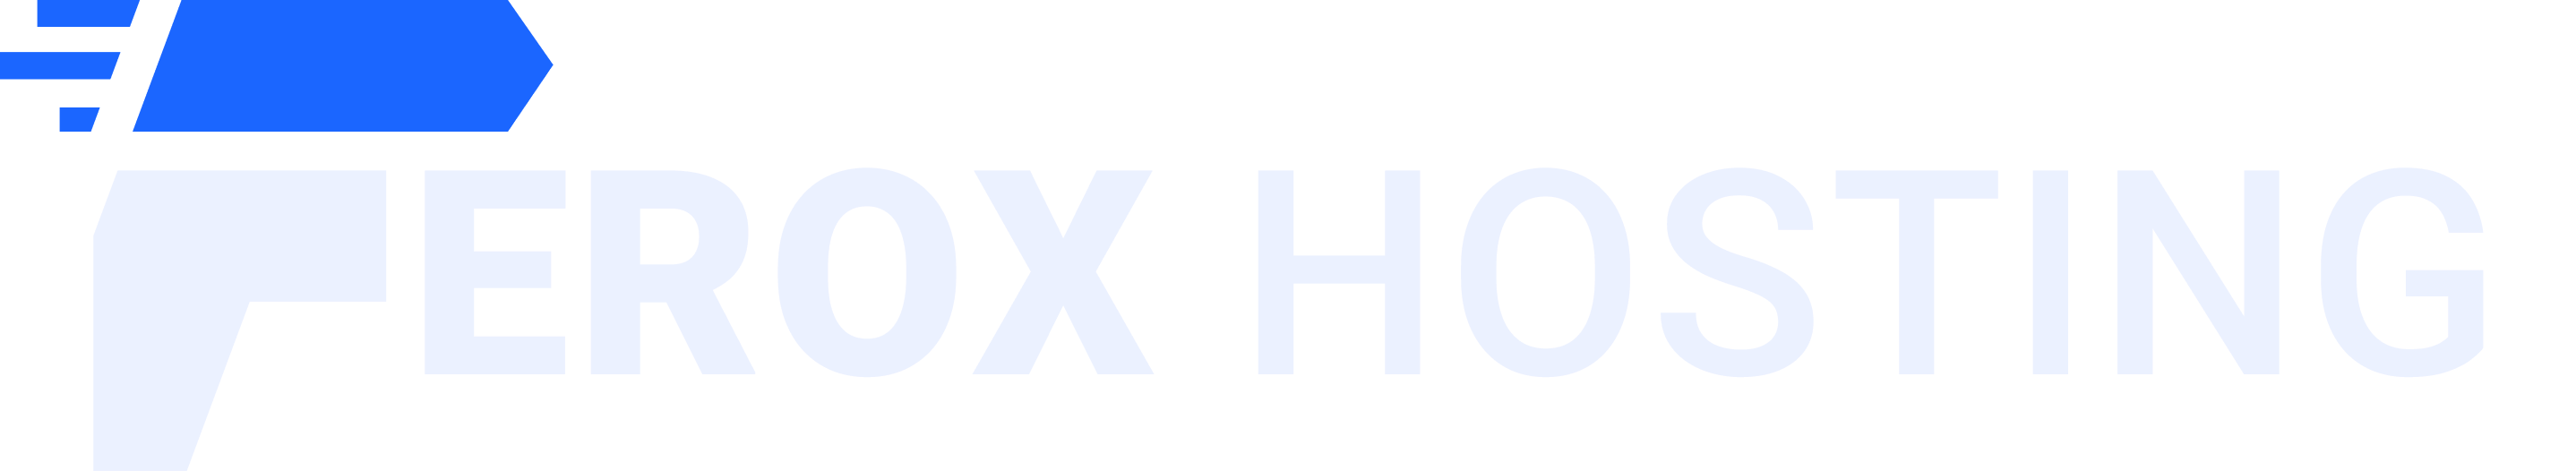 ferox hosting logo